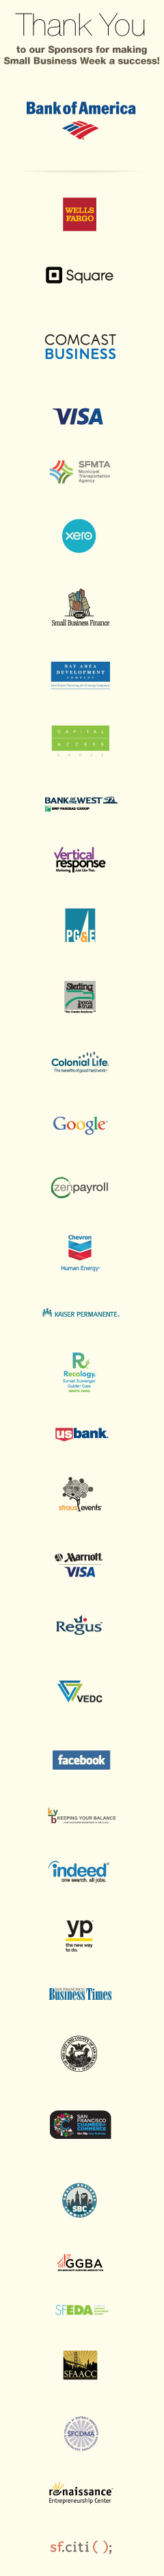 Vertical-Response-Logo-Sidebar